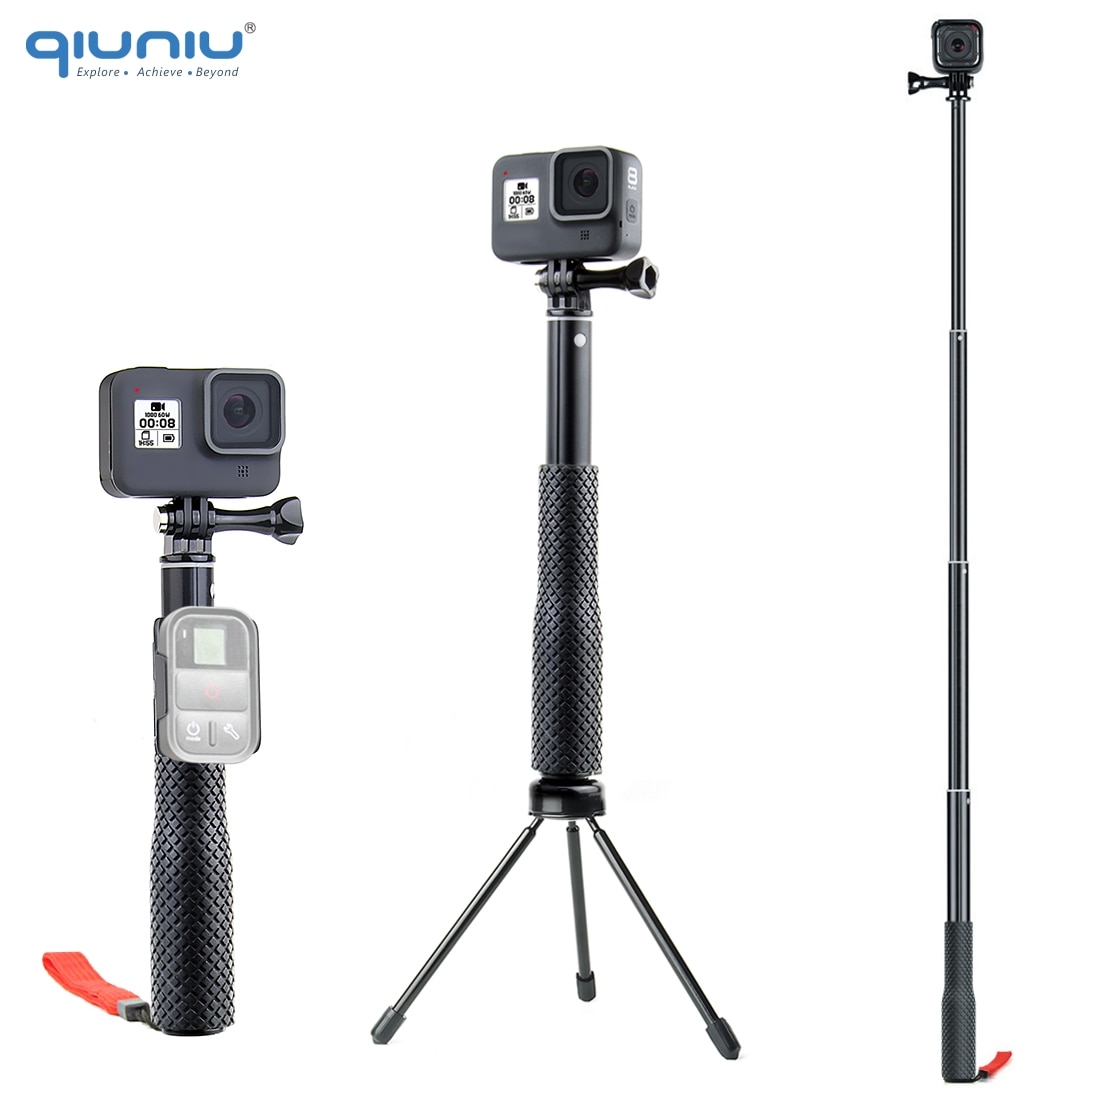 QIUNIU Uitschuifbare Monopod Selfie Stick Handheld Pole met Statief Adapter Mount voor GoPro Hero 8/7/6/ 5 voor DJI Osmo Pocket Camera